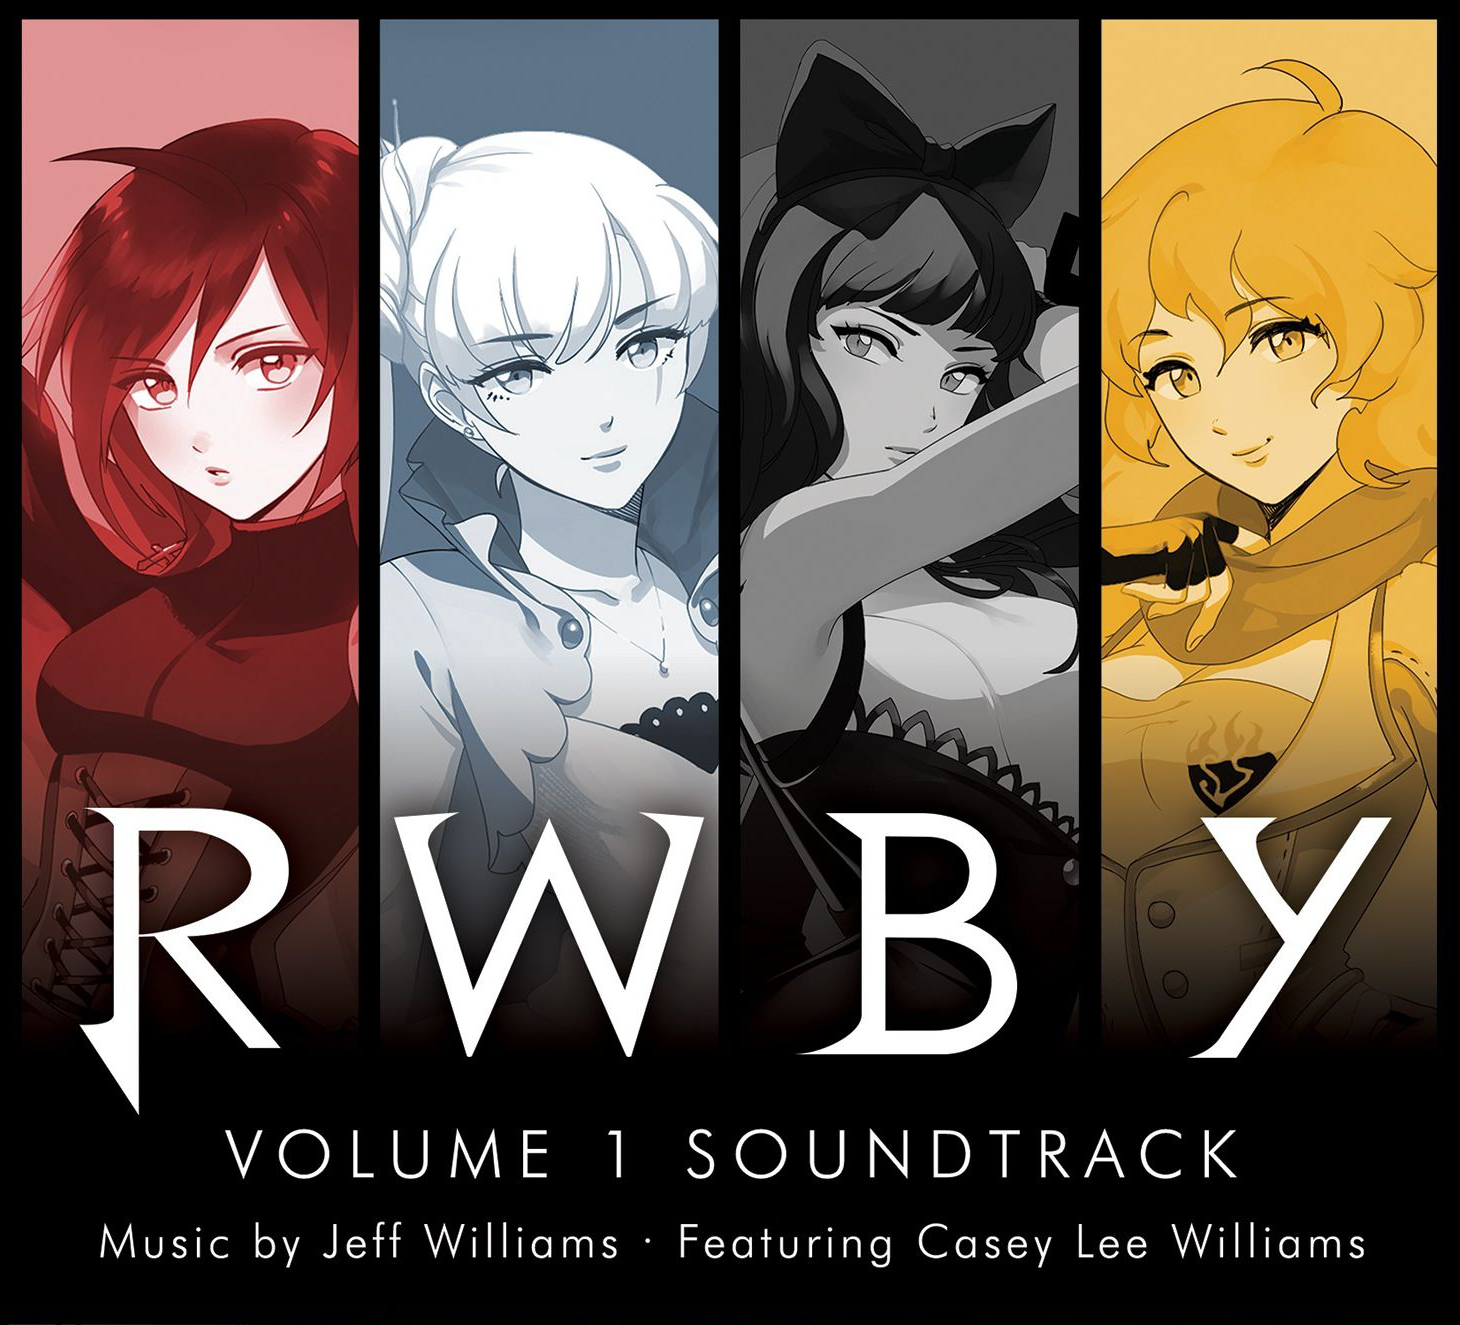 Rwby Volume 1 サウンドトラック Rwby Wiki Fandom